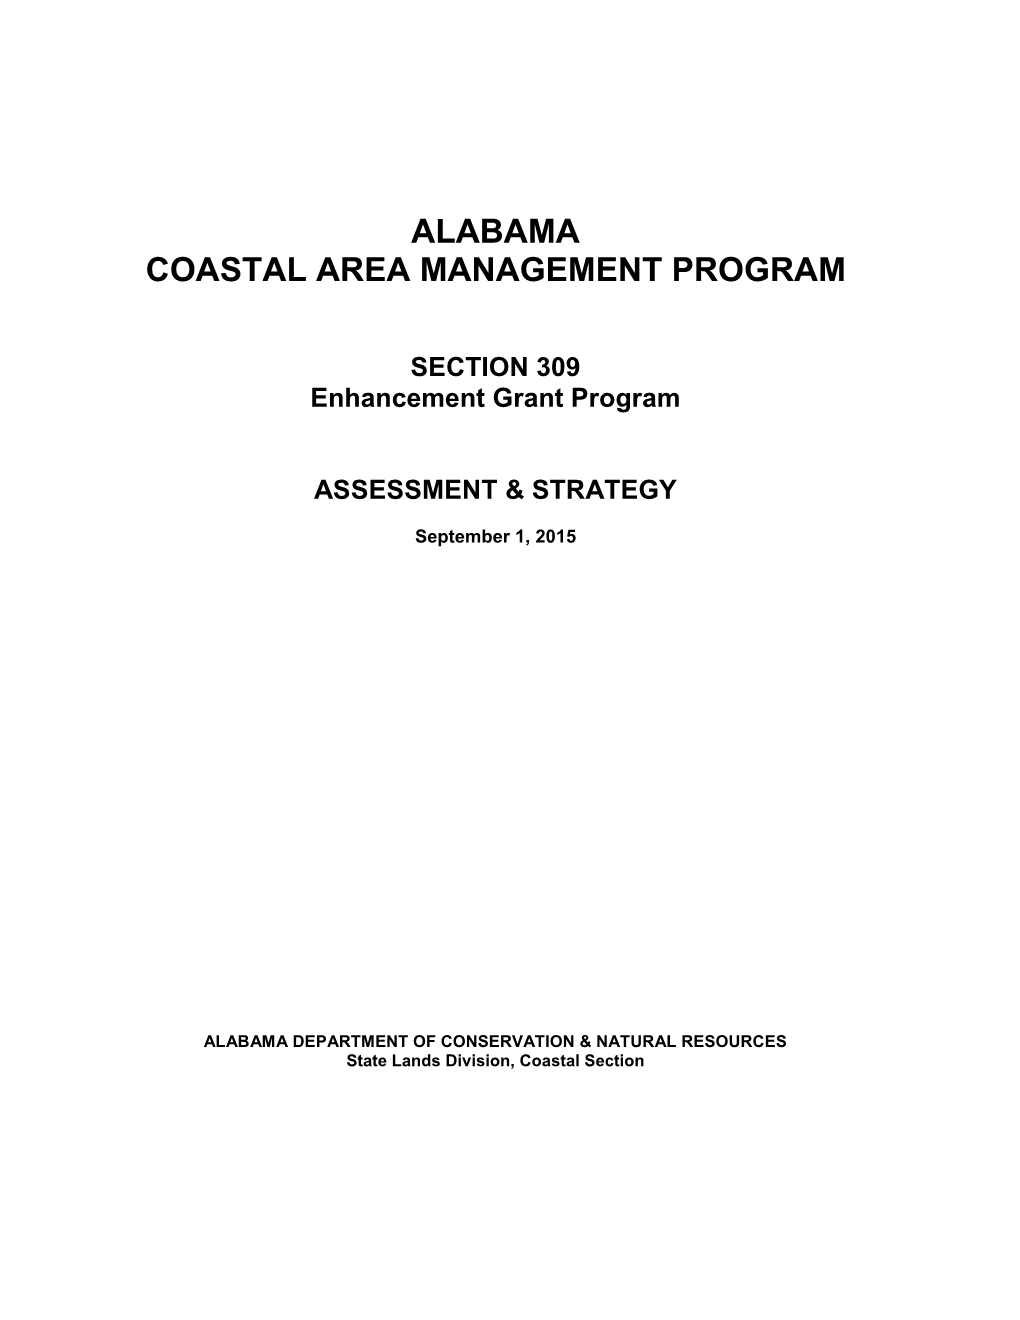 State of Alabama Coastal Area Management Program